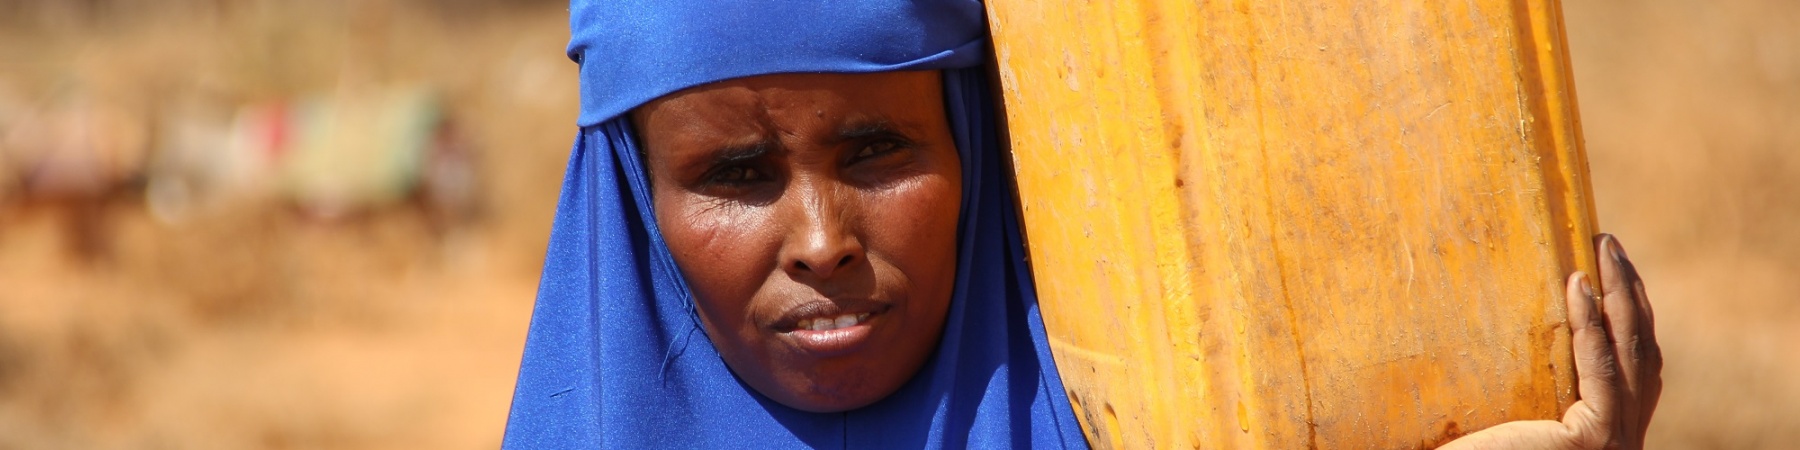 Somalia siccità 